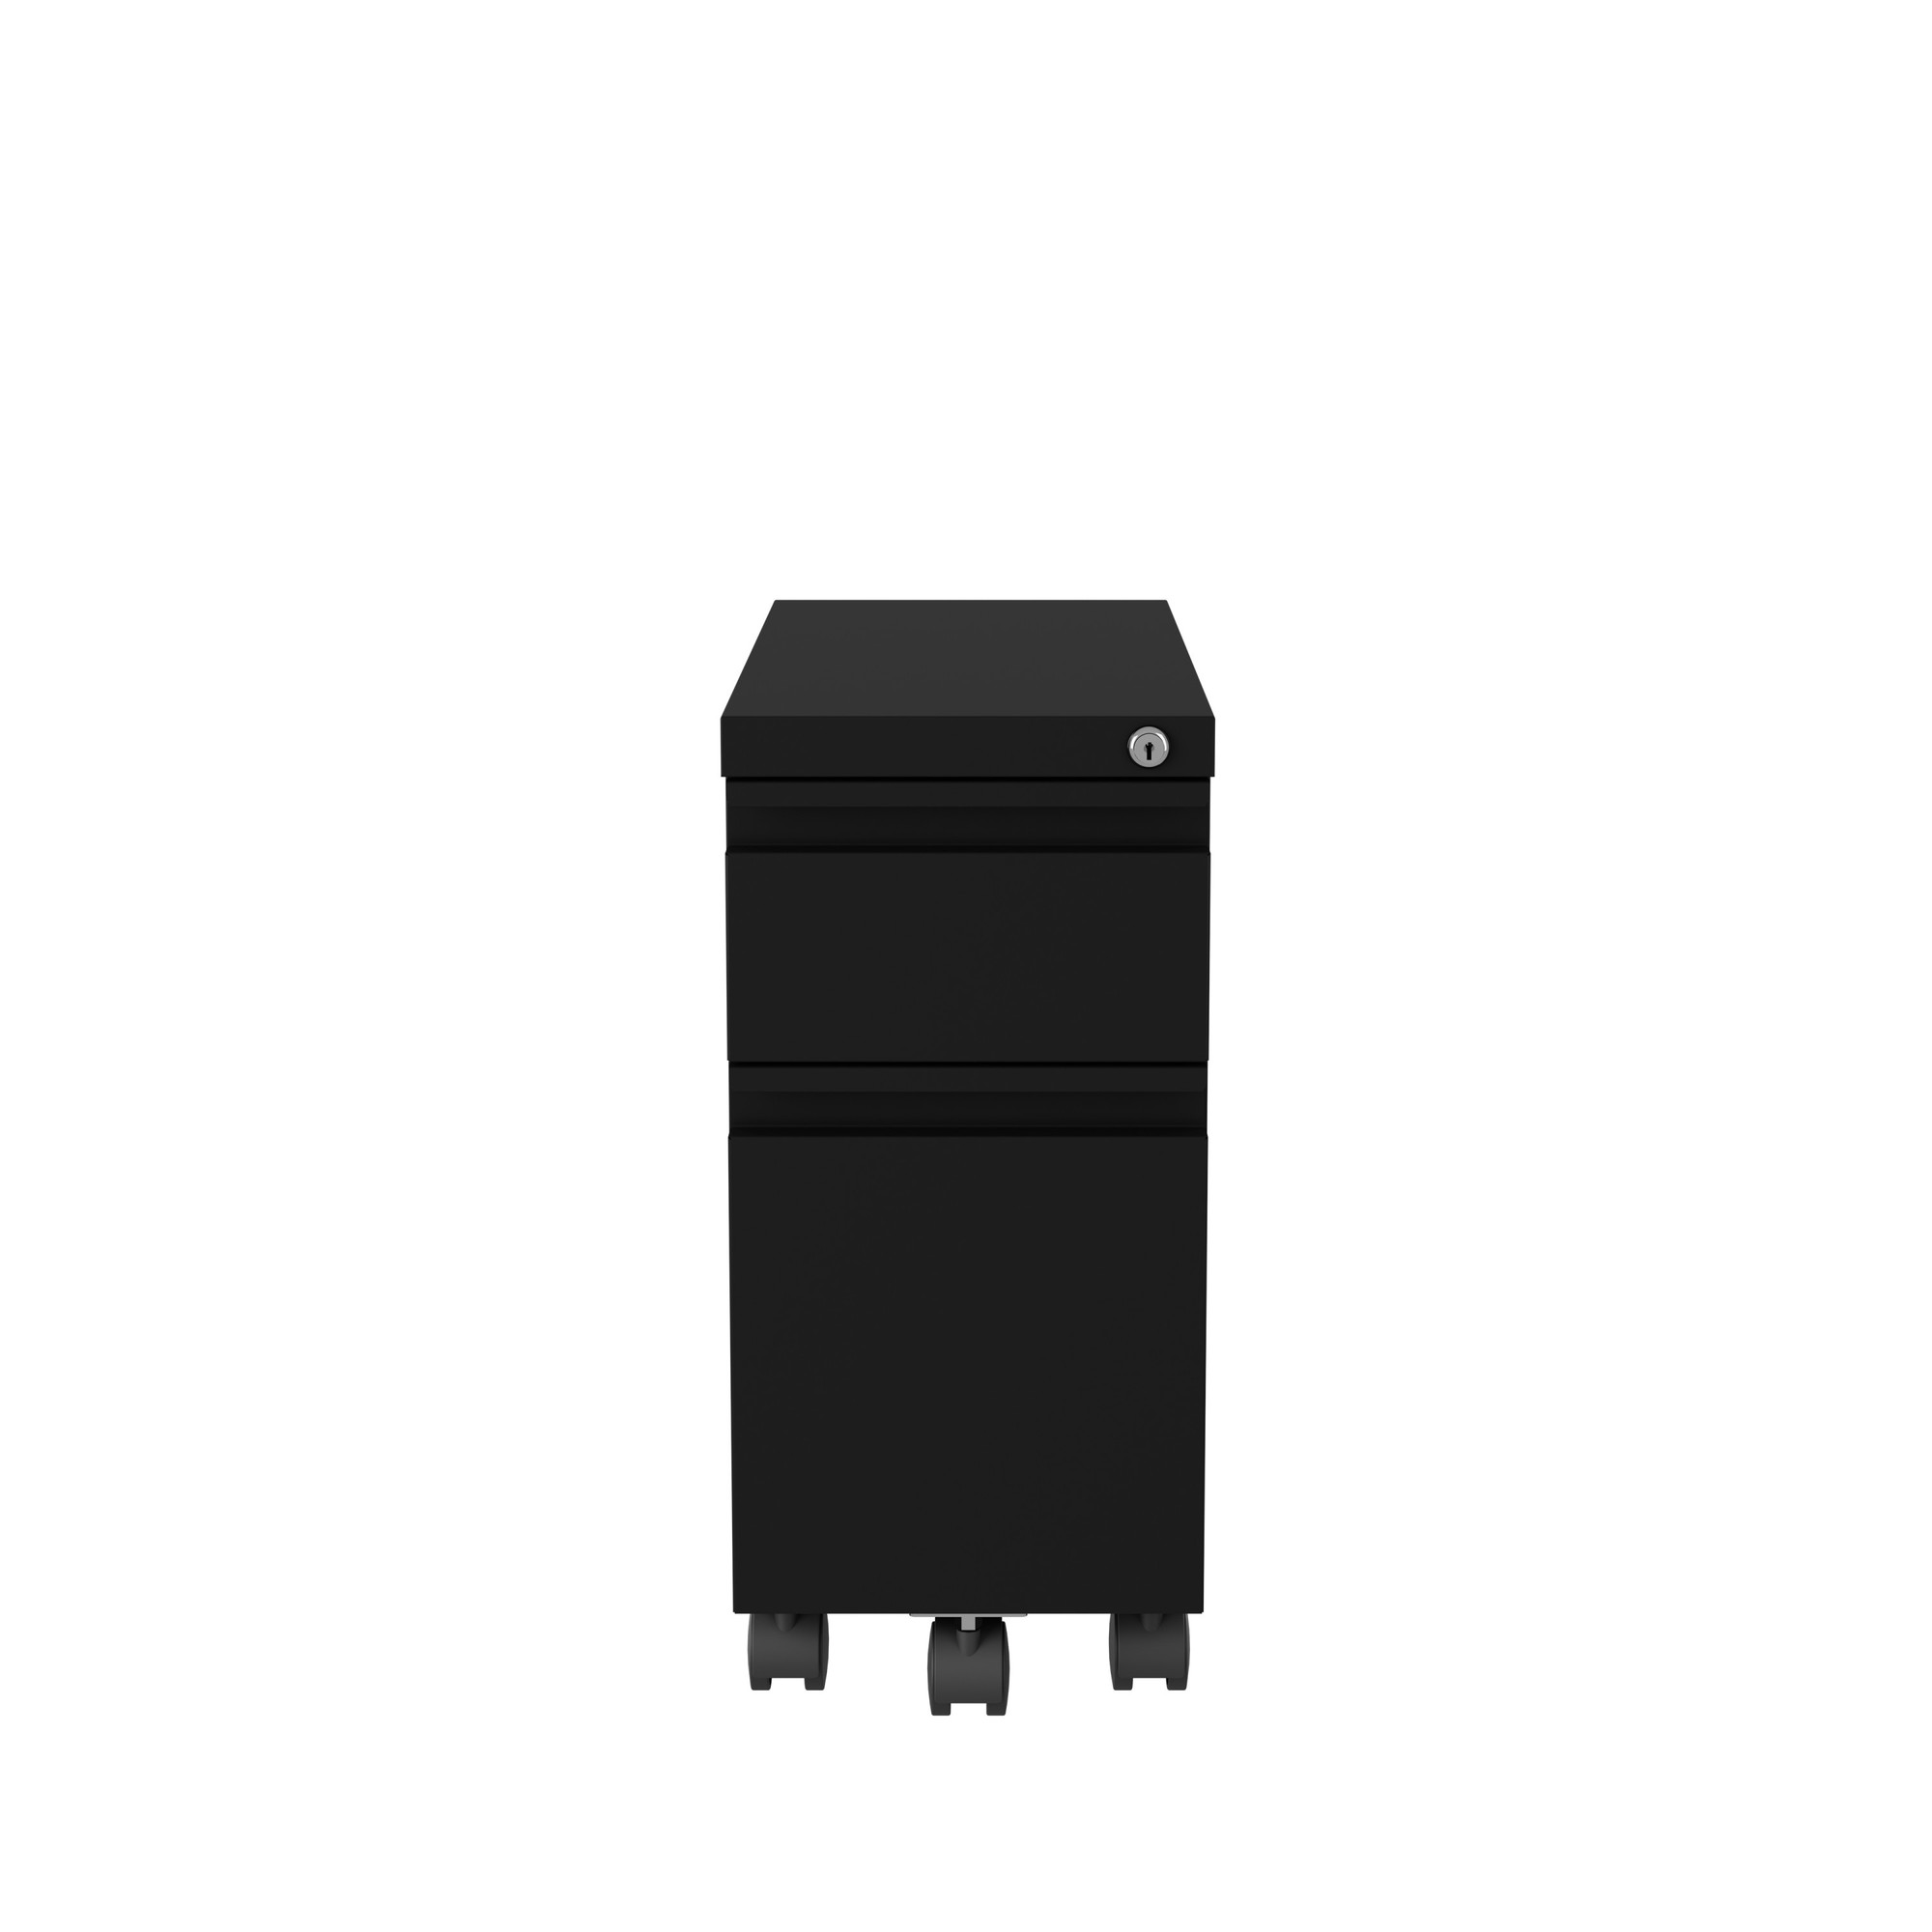 Hirsh Industries, Mobile Zip Pedestal File Cabinet 2 Drawer, Width 10 in, Depth 19.875 in, Height 21.75 in, Model 22650